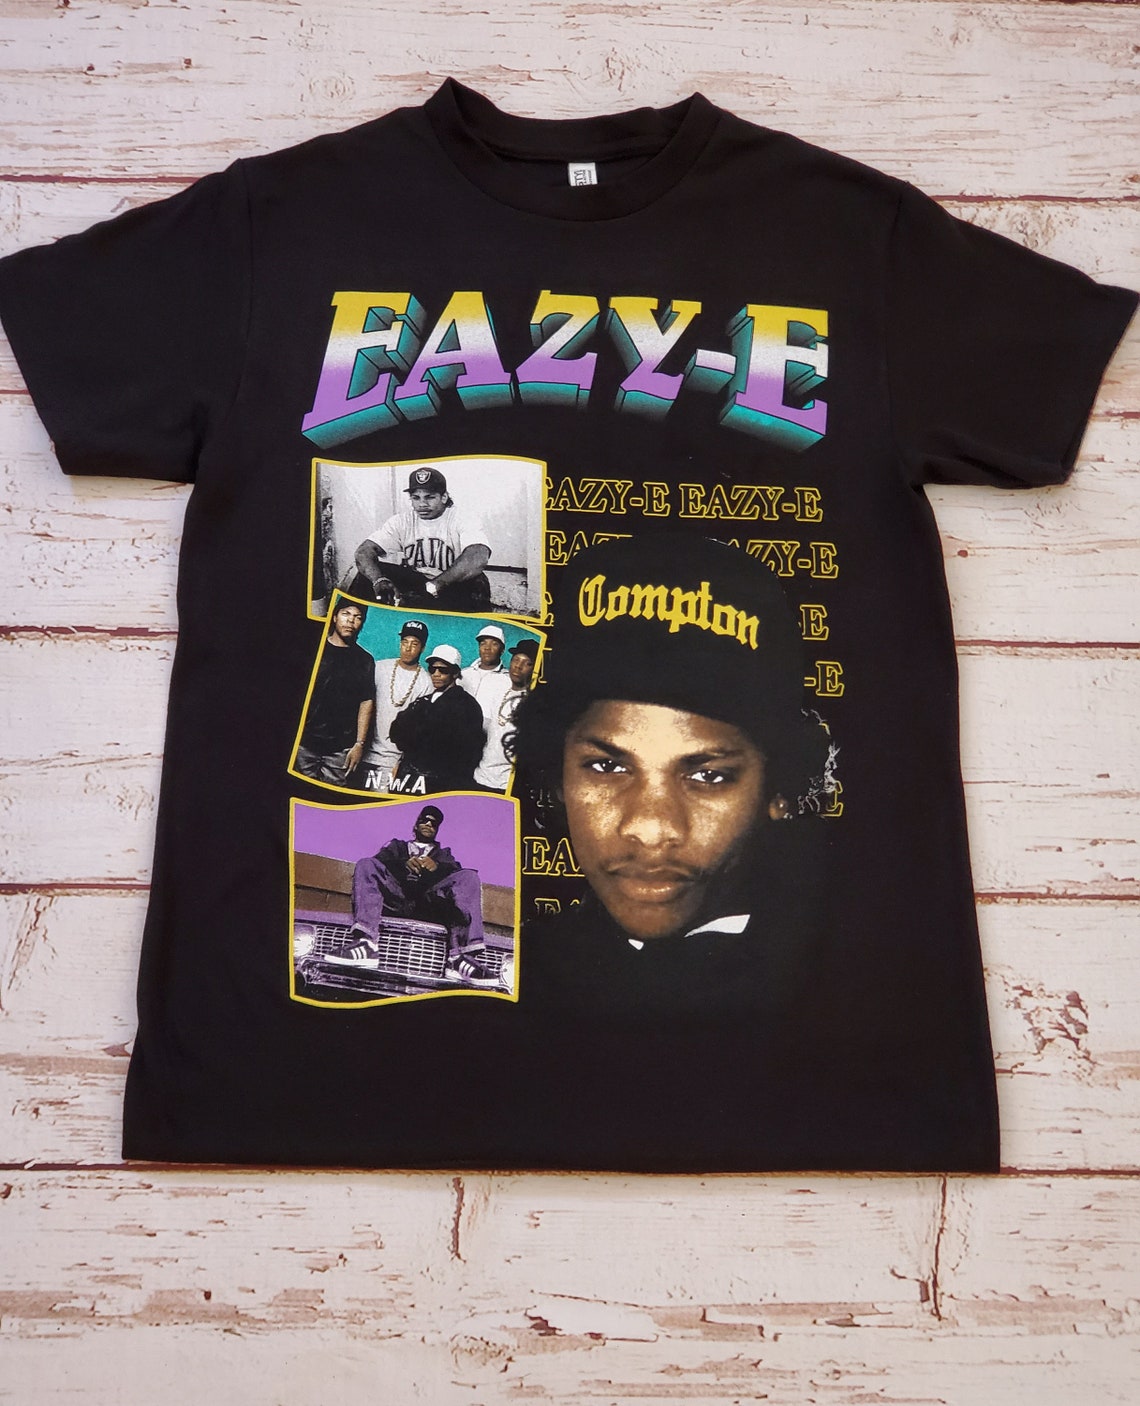 NEW EAZY E T-shirt | Etsy